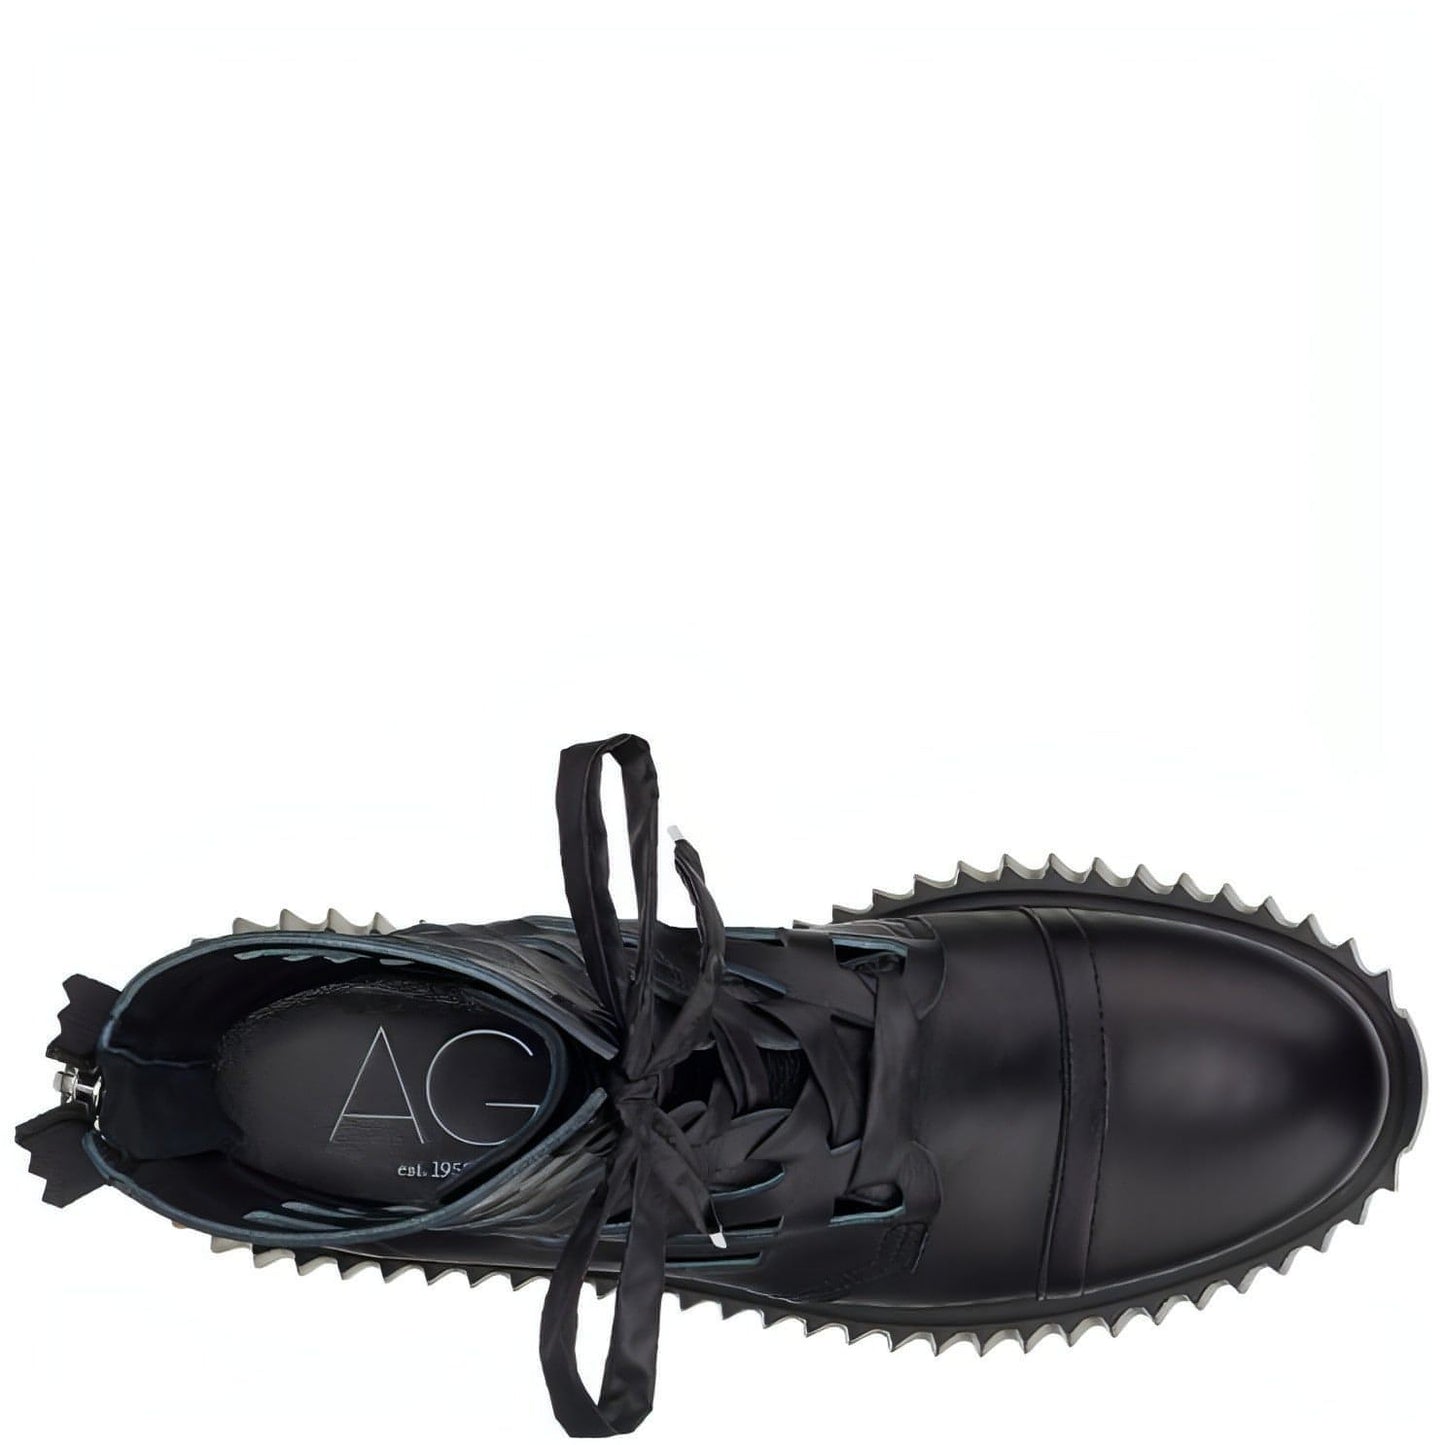 AGL moteriški juodi batai - aulinukai VIGGY BOOTIES